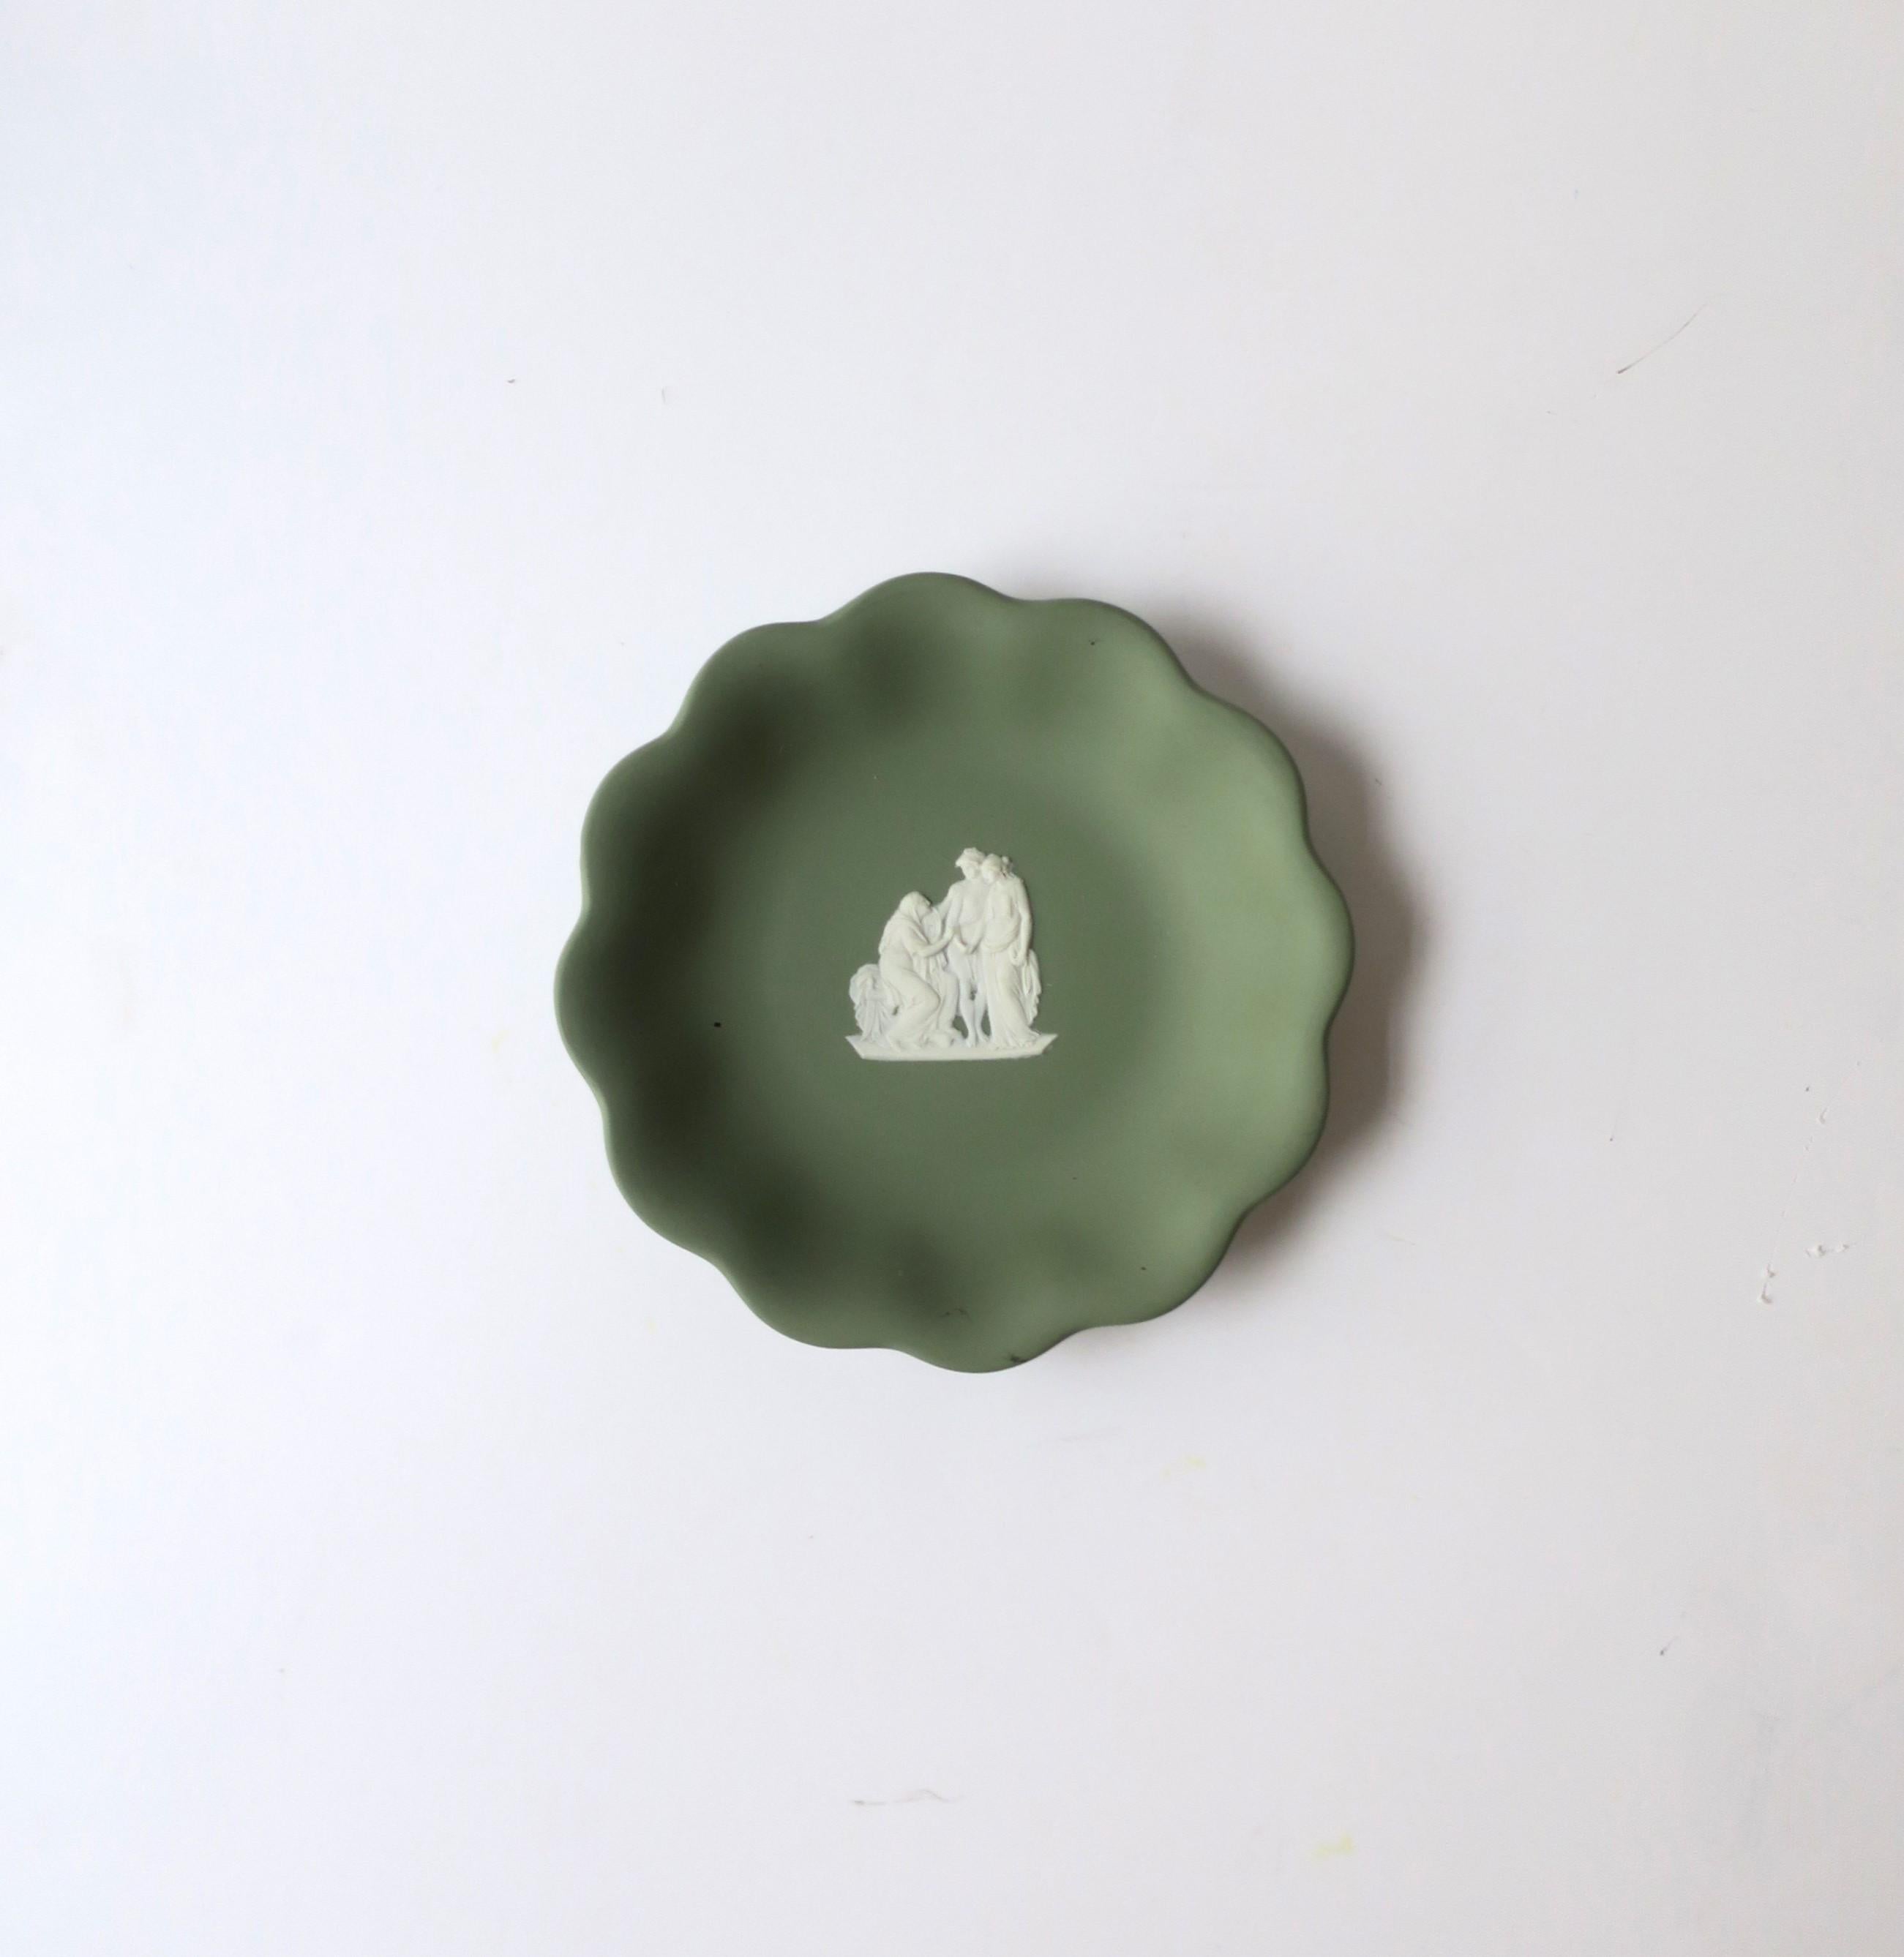 Magnifique plat en grès mat vert sauge et blanc de Wedgwood Jasperware, de style néoclassique, milieu du XXe siècle, 1962, Angleterre. La pièce est un grès mat d'un vert sauge clair avec un bord festonné et un relief néoclassique blanc au centre.